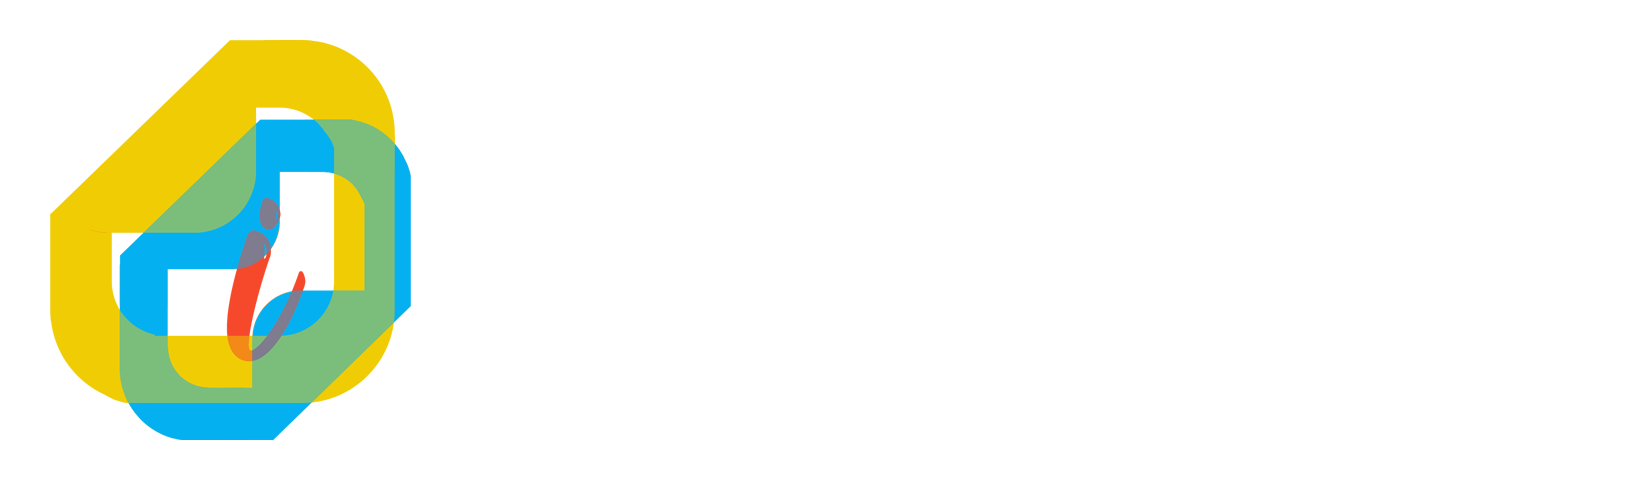 ePPID Kabupaten Dairi